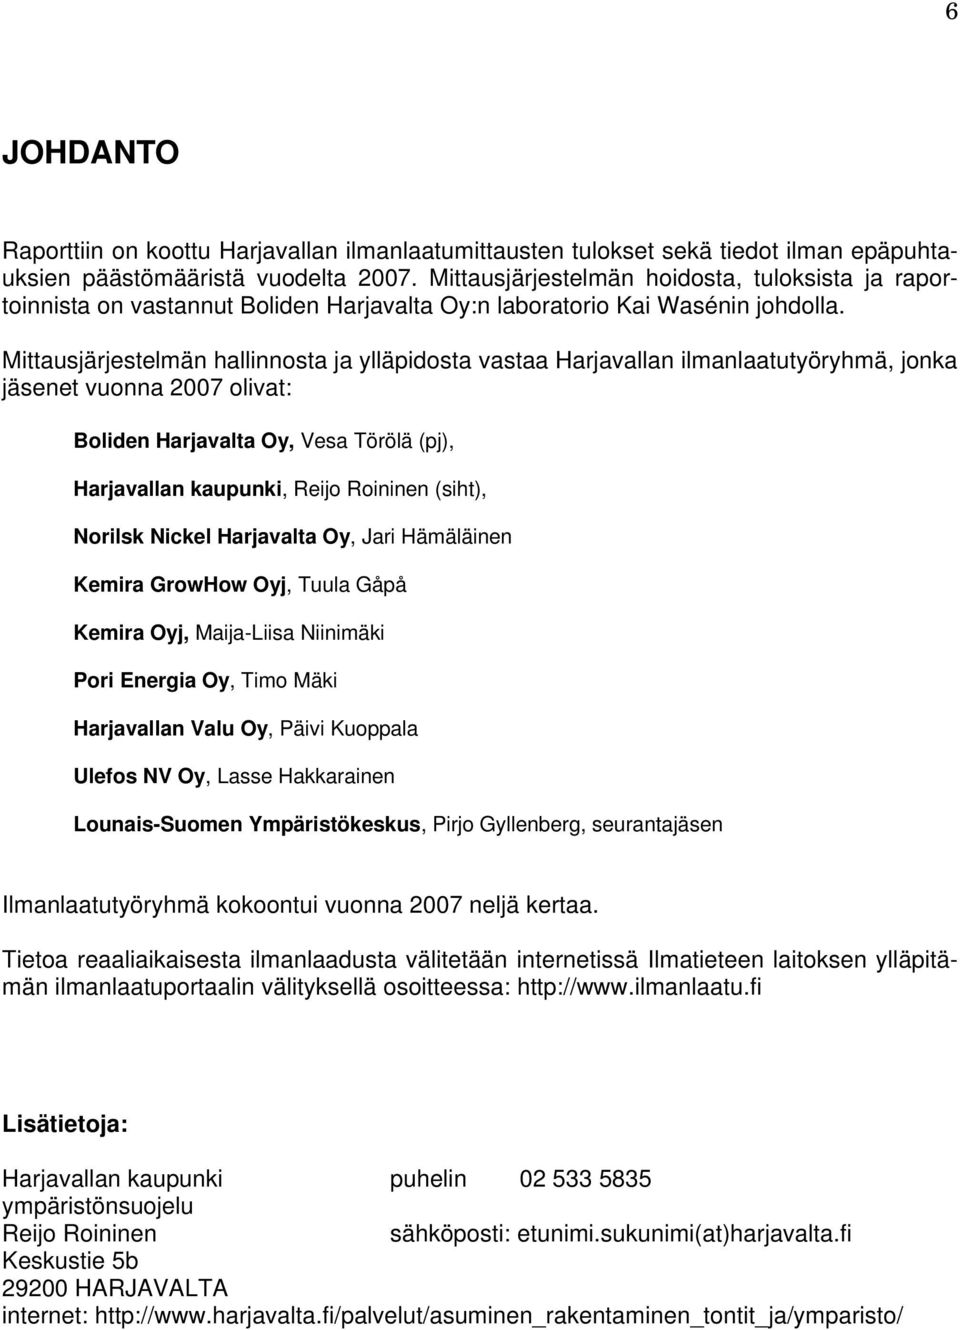 Mittausjärjestelmän hallinnosta ja ylläpidosta vastaa Harjavallan ilmanlaatutyöryhmä, jonka jäsenet vuonna 2007 olivat: Boliden Harjavalta Oy, Vesa Törölä (pj), Harjavallan kaupunki, Reijo Roininen